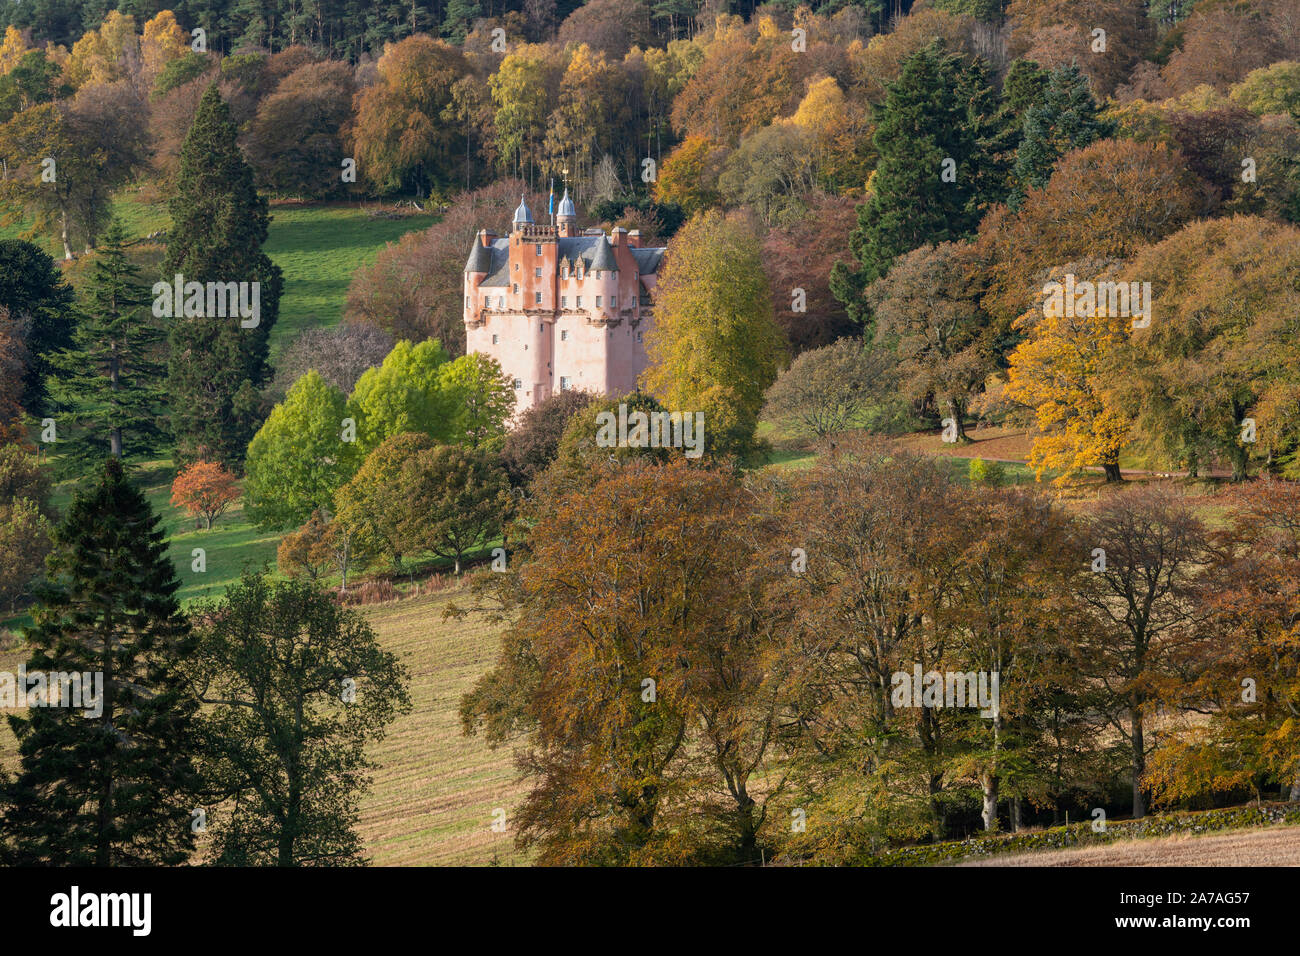 La couleur rose de Craigievar Castle complète les couleurs automnales des arbres divers sur une colline boisée dans l'Aberdeenshire. Banque D'Images